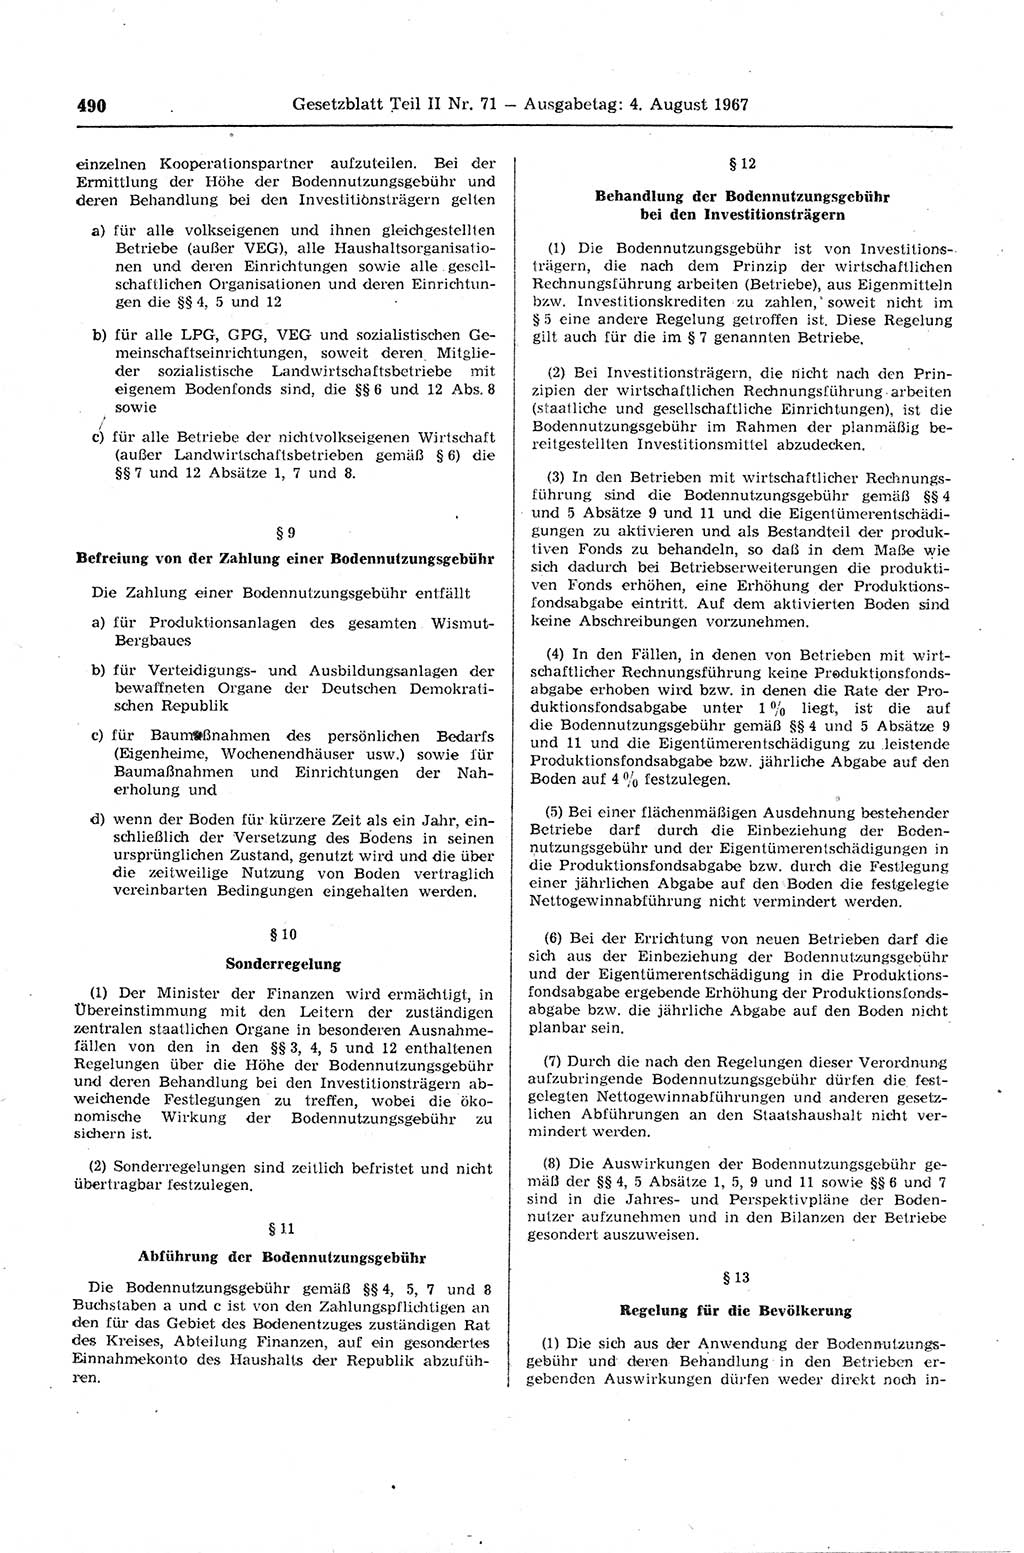 Gesetzblatt (GBl.) der Deutschen Demokratischen Republik (DDR) Teil ⅠⅠ 1967, Seite 490 (GBl. DDR ⅠⅠ 1967, S. 490)